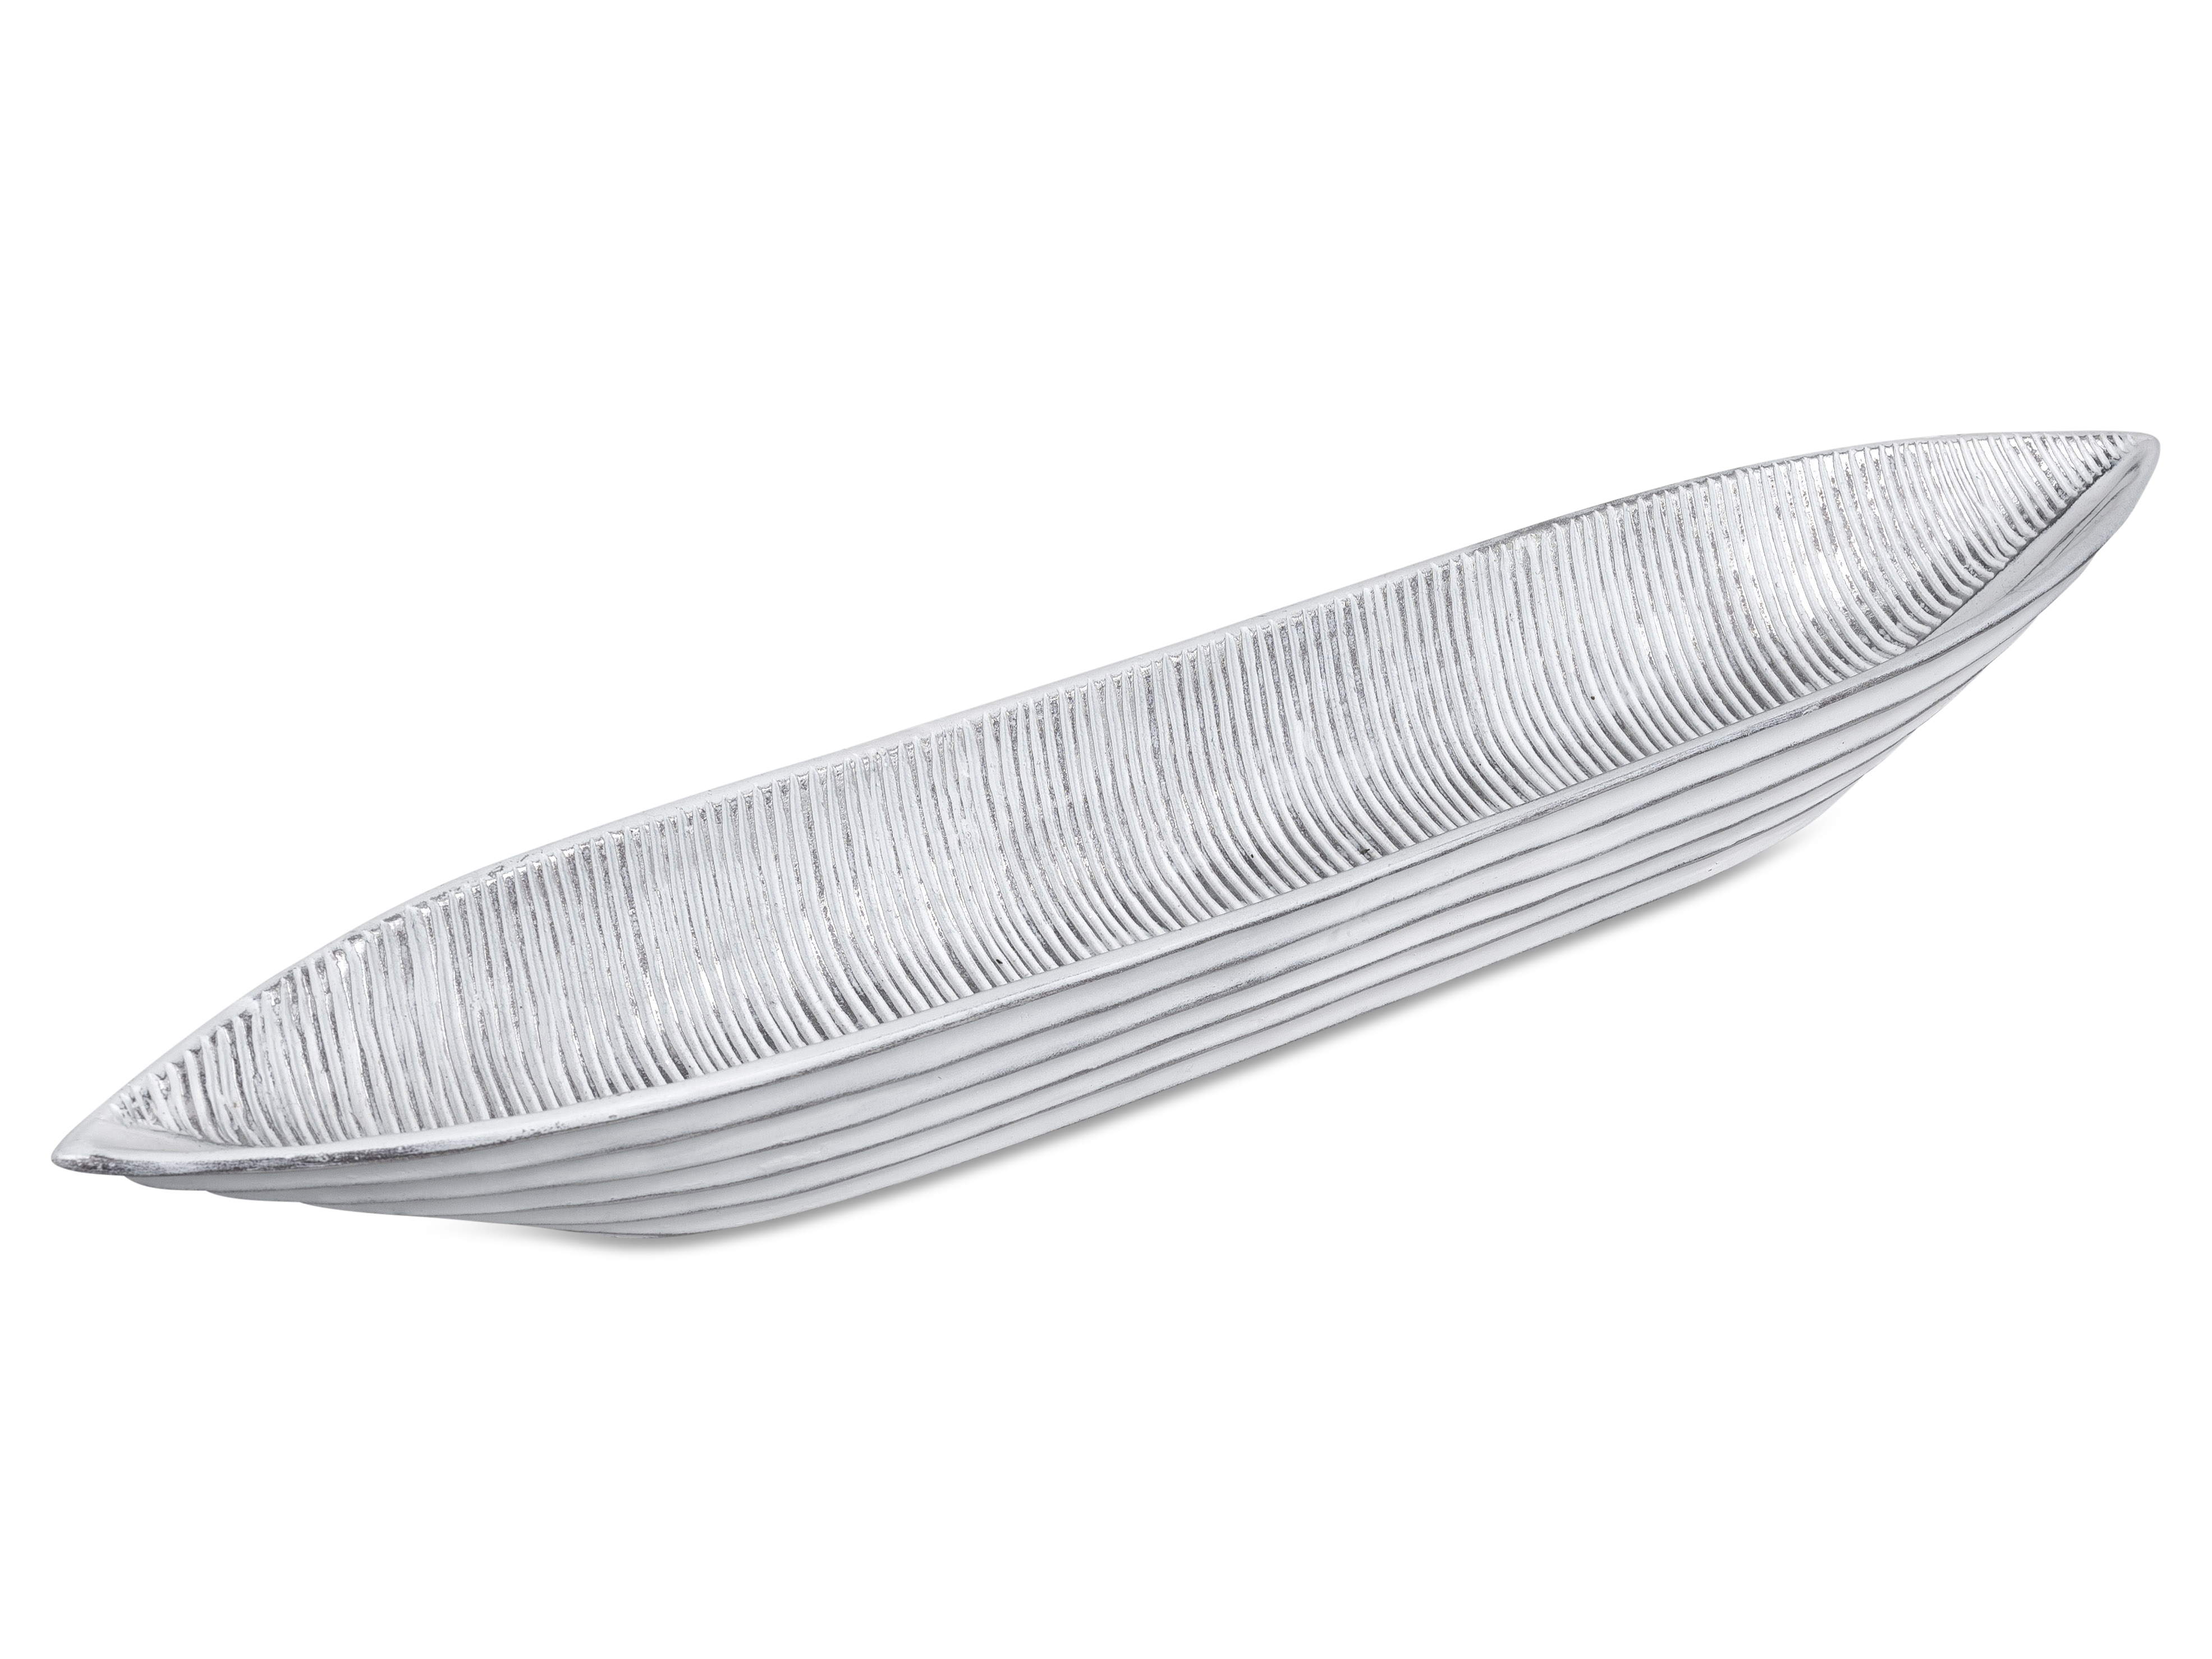 Deko-Schale Länge 62 cm in weiß-silber massiv Schale Tischdeko formano